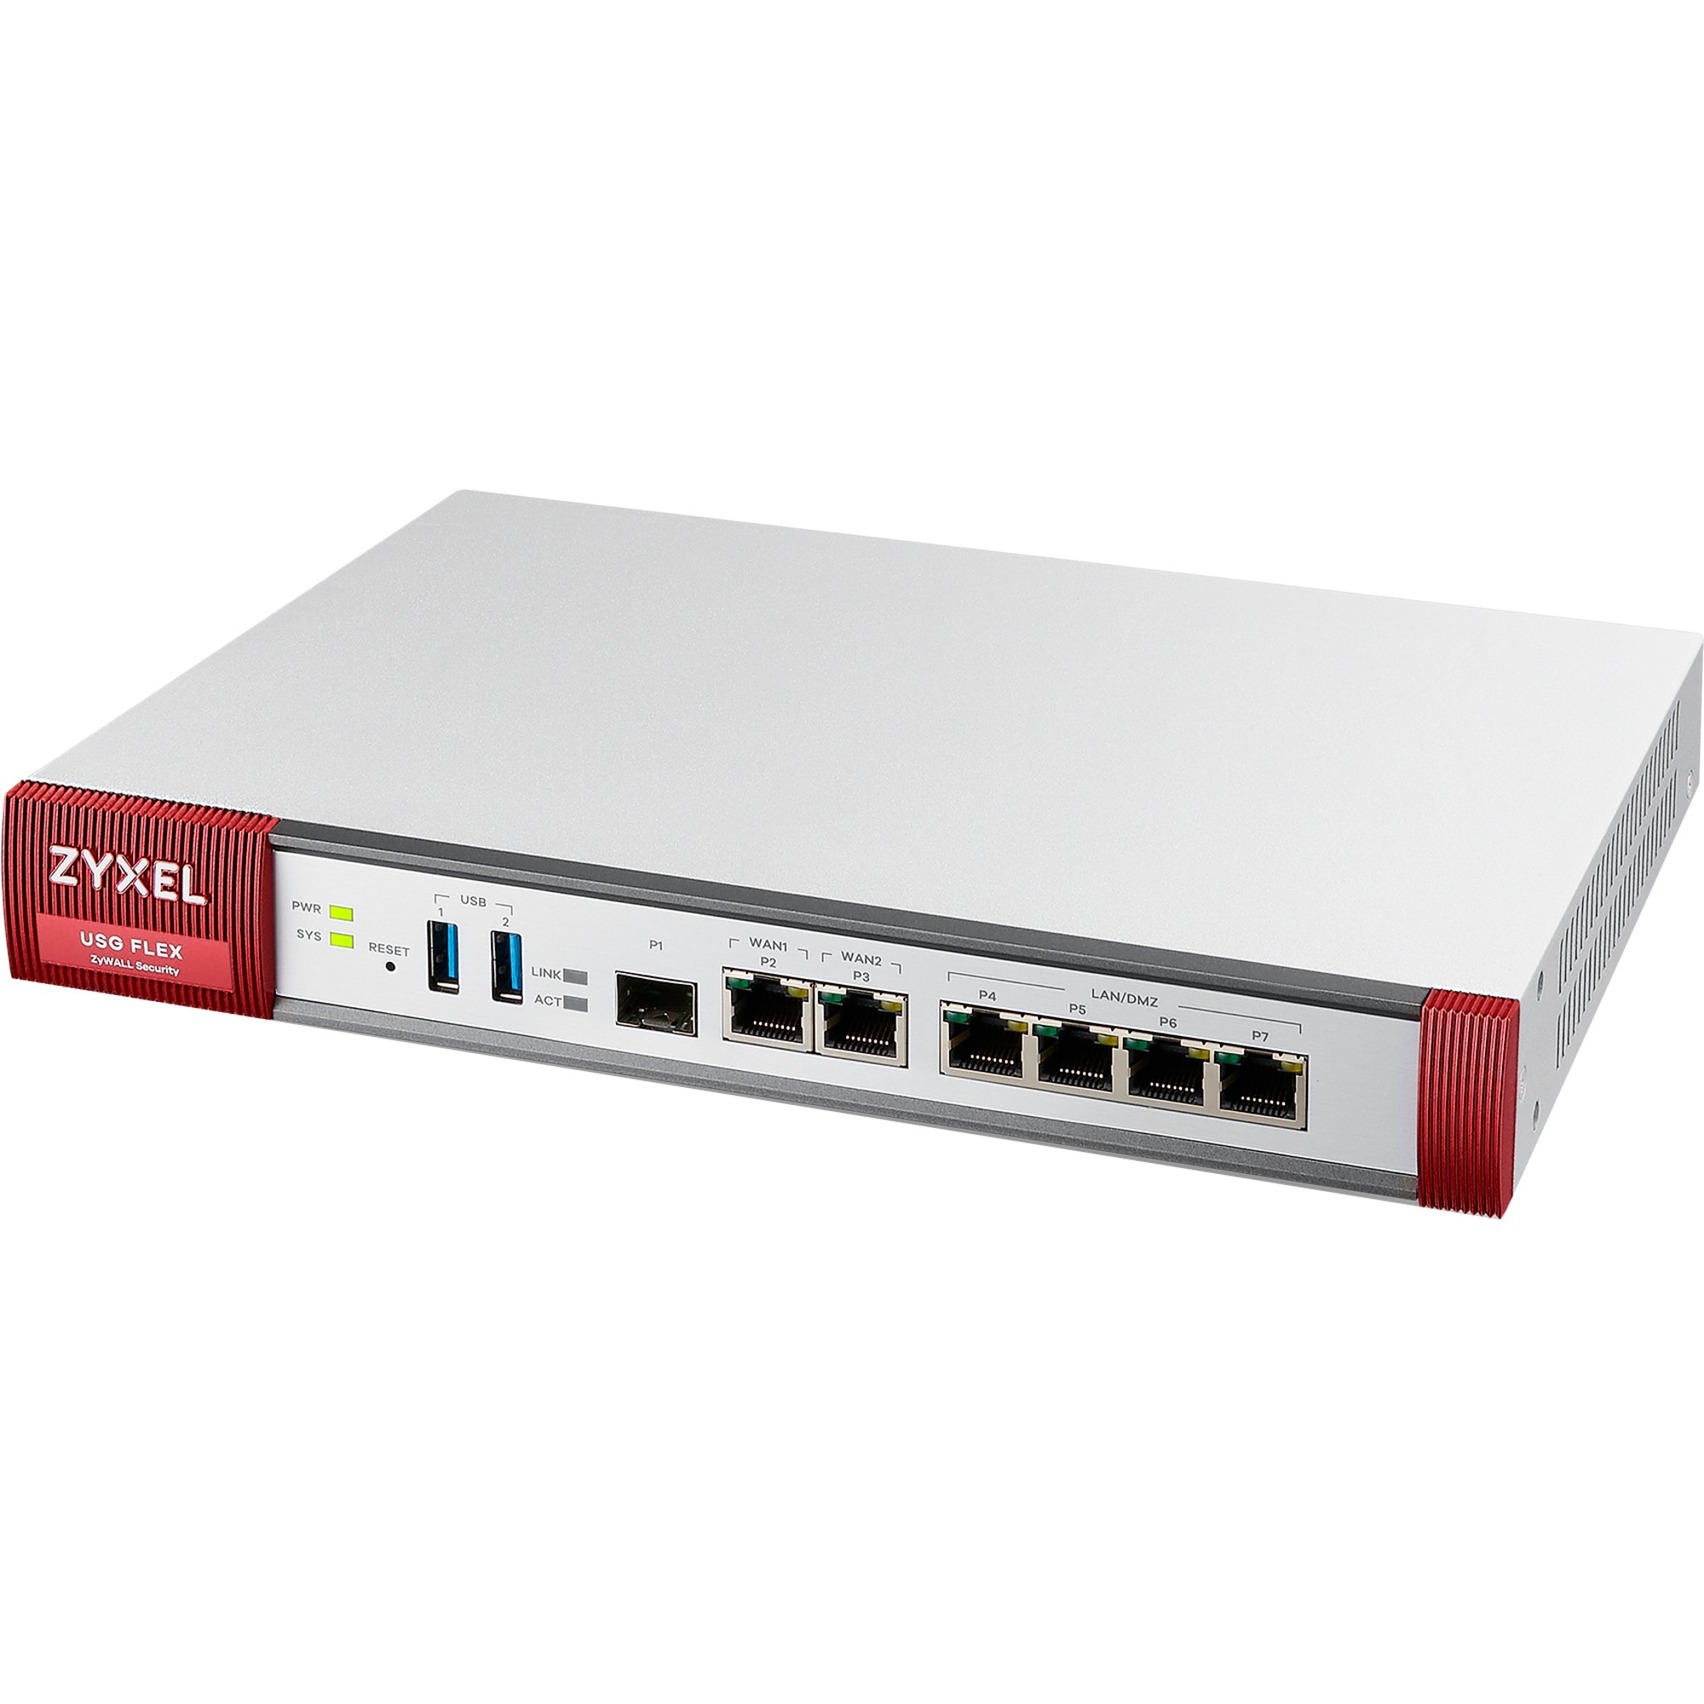 USG FLEX 200, Firewall von Zyxel